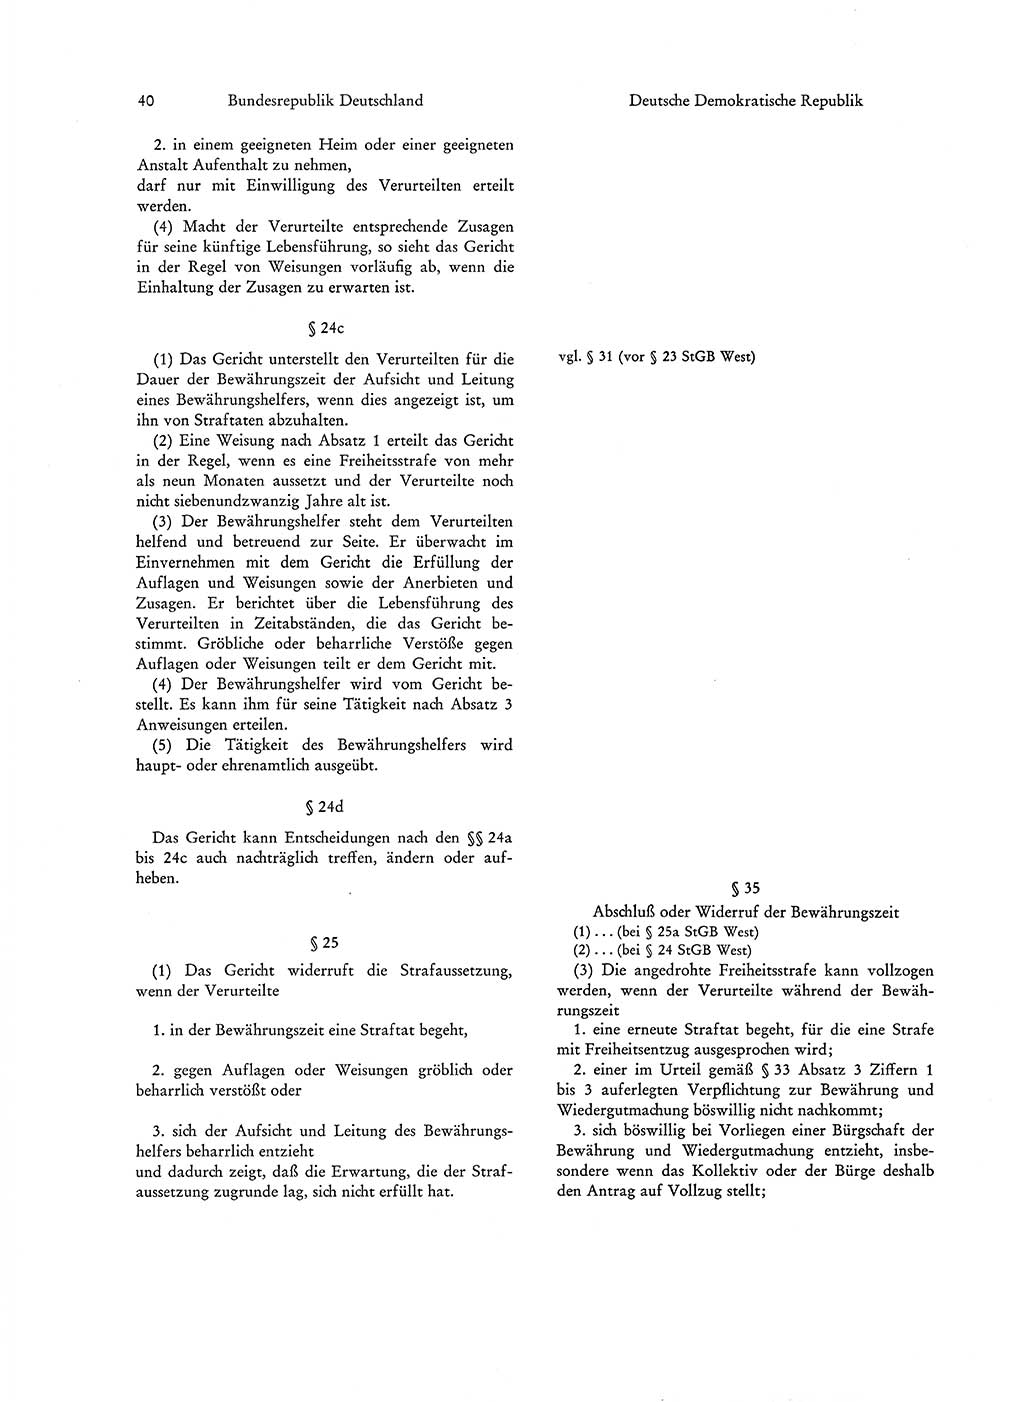 Strafgesetzgebung in Deutschland [Bundesrepublik Deutschland (BRD) und Deutsche Demokratische Republik (DDR)] 1972, Seite 40 (Str.-Ges. Dtl. StGB BRD DDR 1972, S. 40)